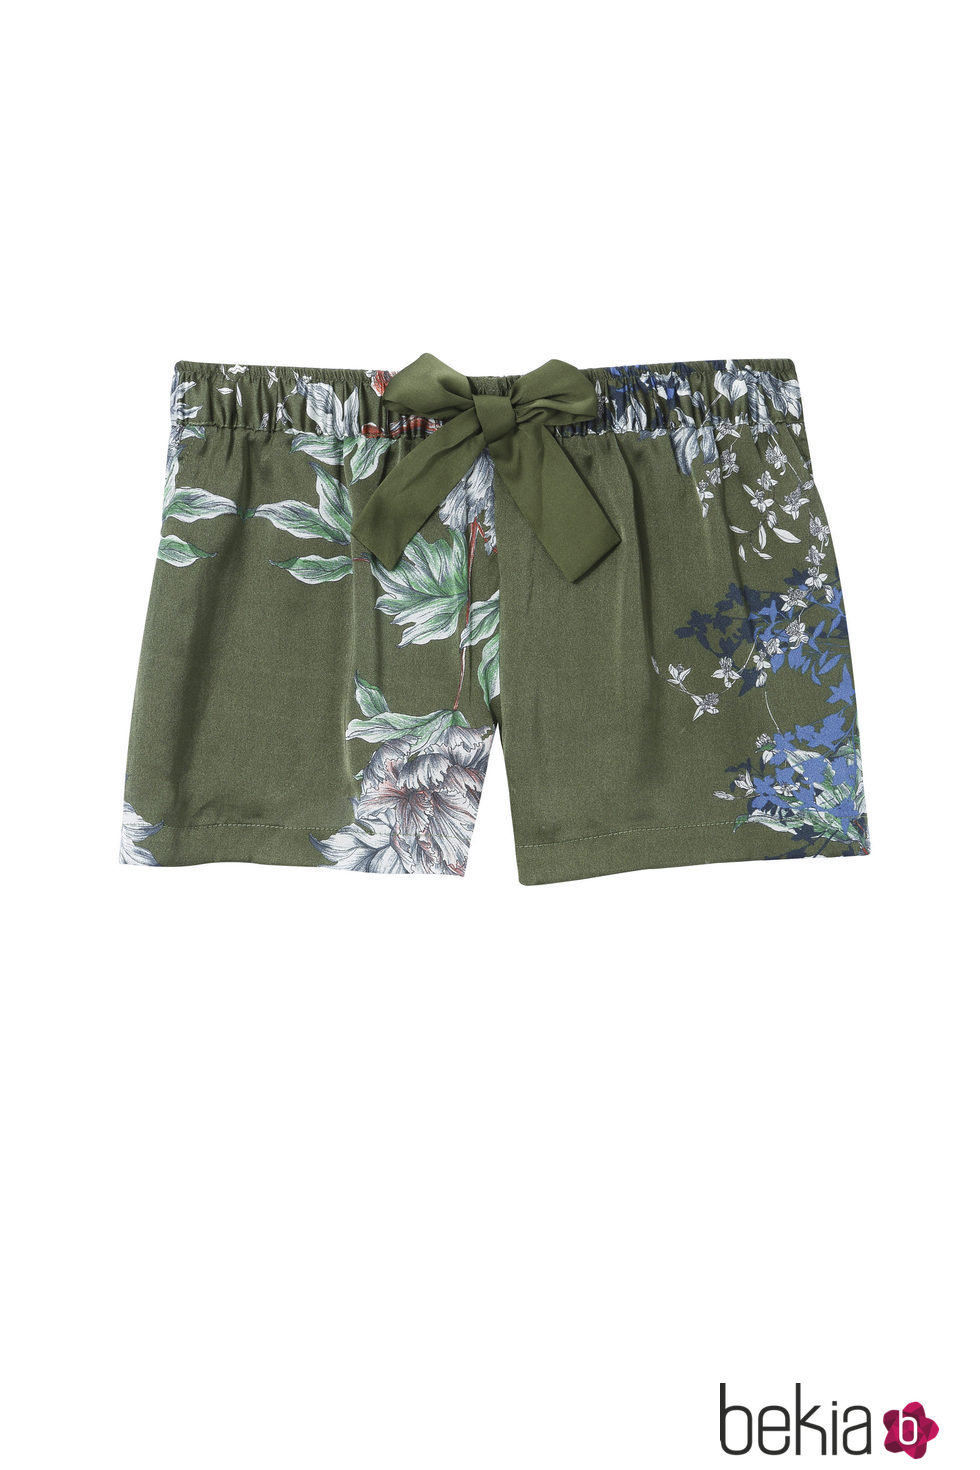 Short de pijama en flores y verde de la colección primavera/verano 2016 de Etam